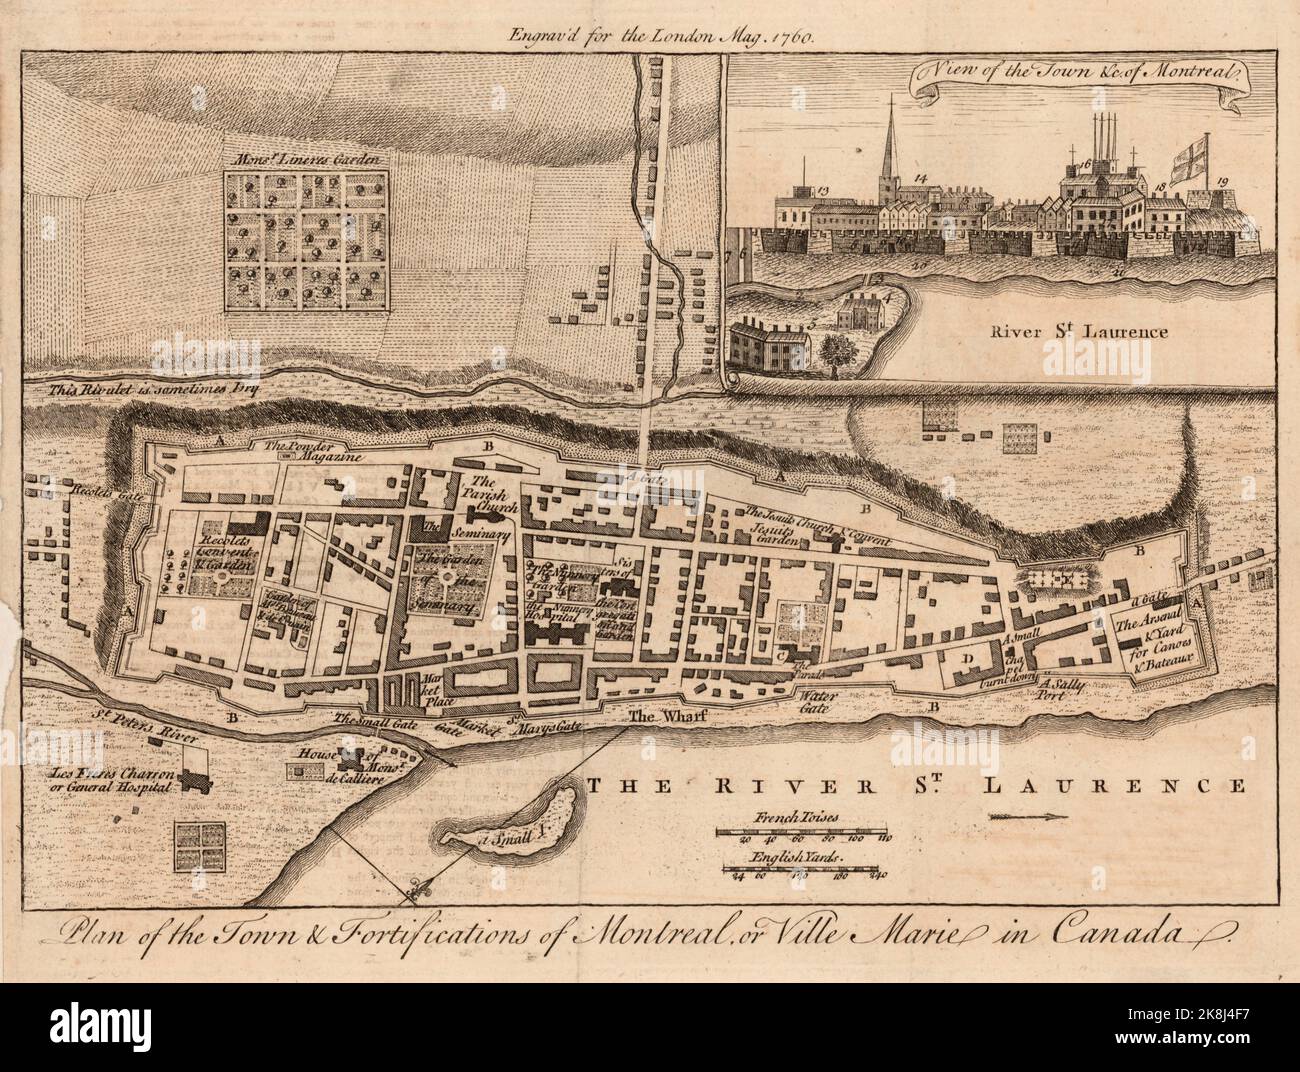 Plan der Stadt & Befestigungsanlagen von Montreal, oder Ville Marie in der Provinz Quebec, Kanada ca. 1760 Stockfoto